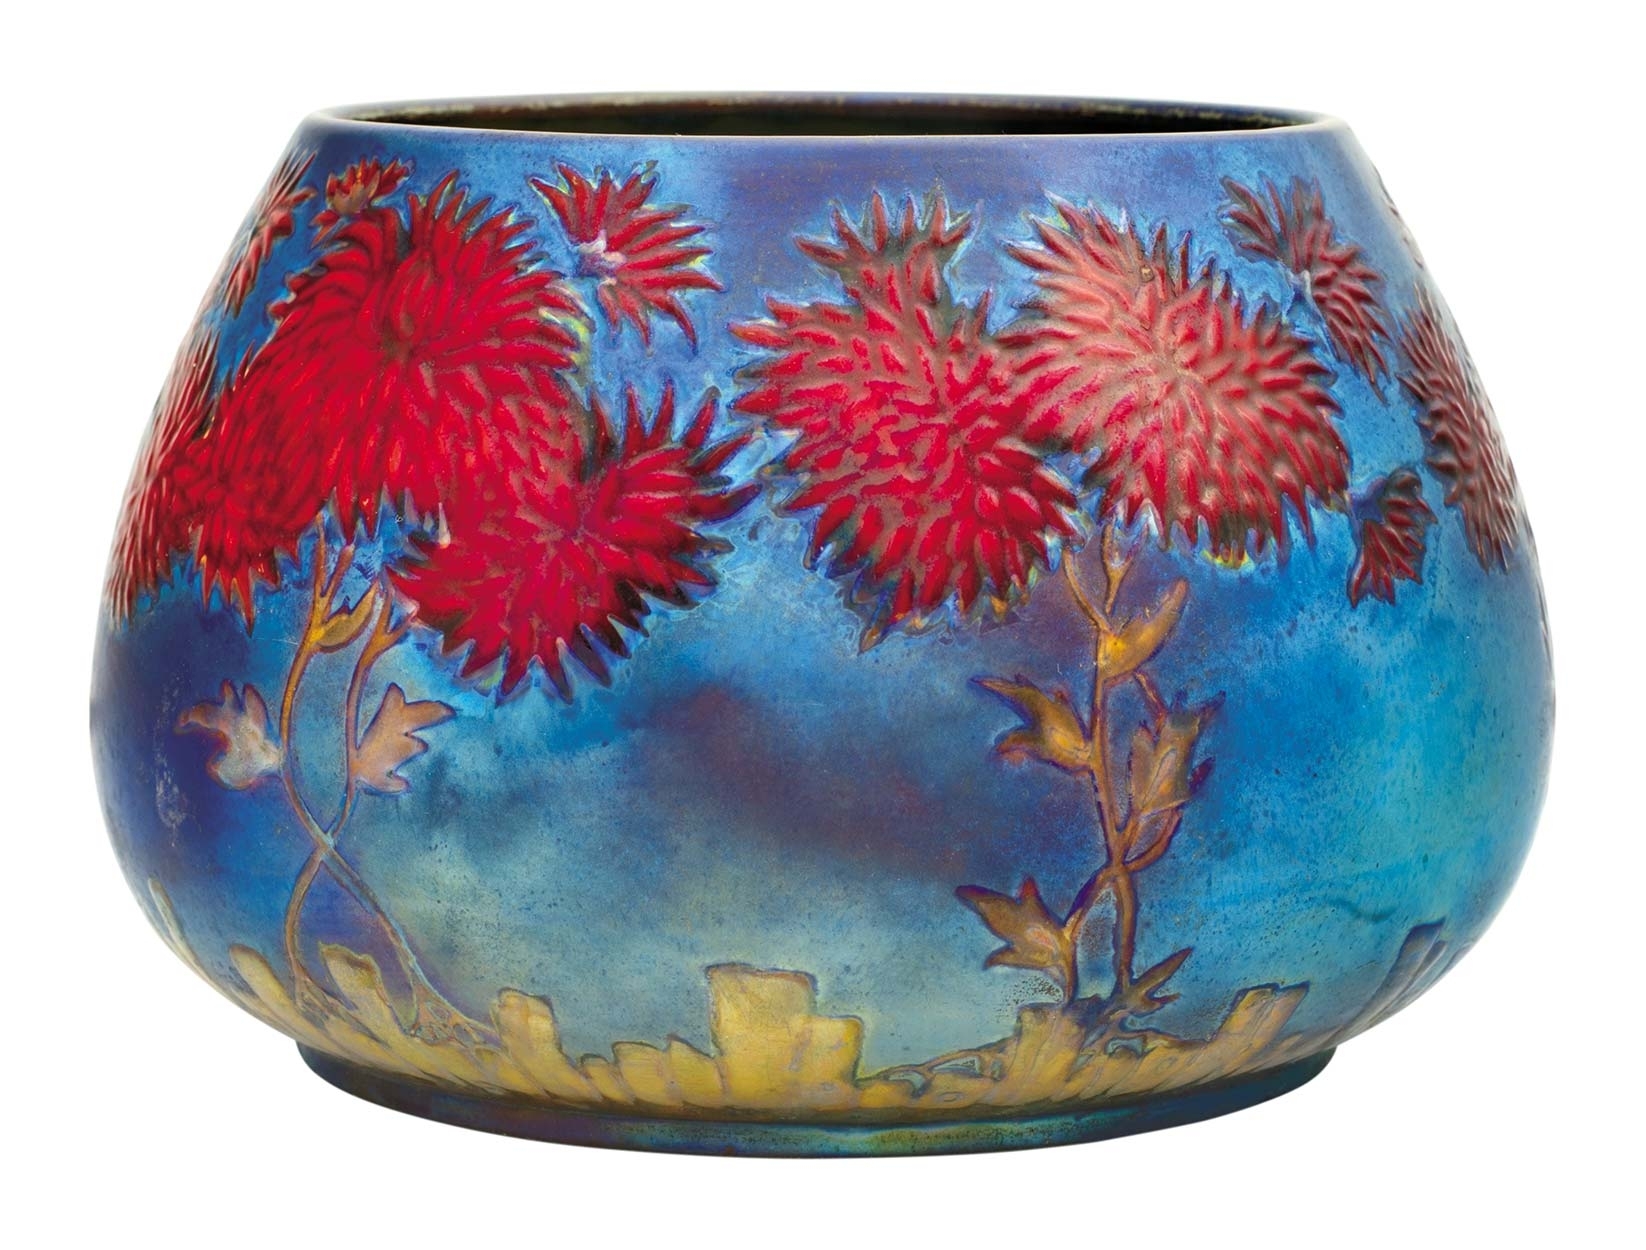 Zsolnay Vase with chrysanthemum decoration, Zsolnay, 1899